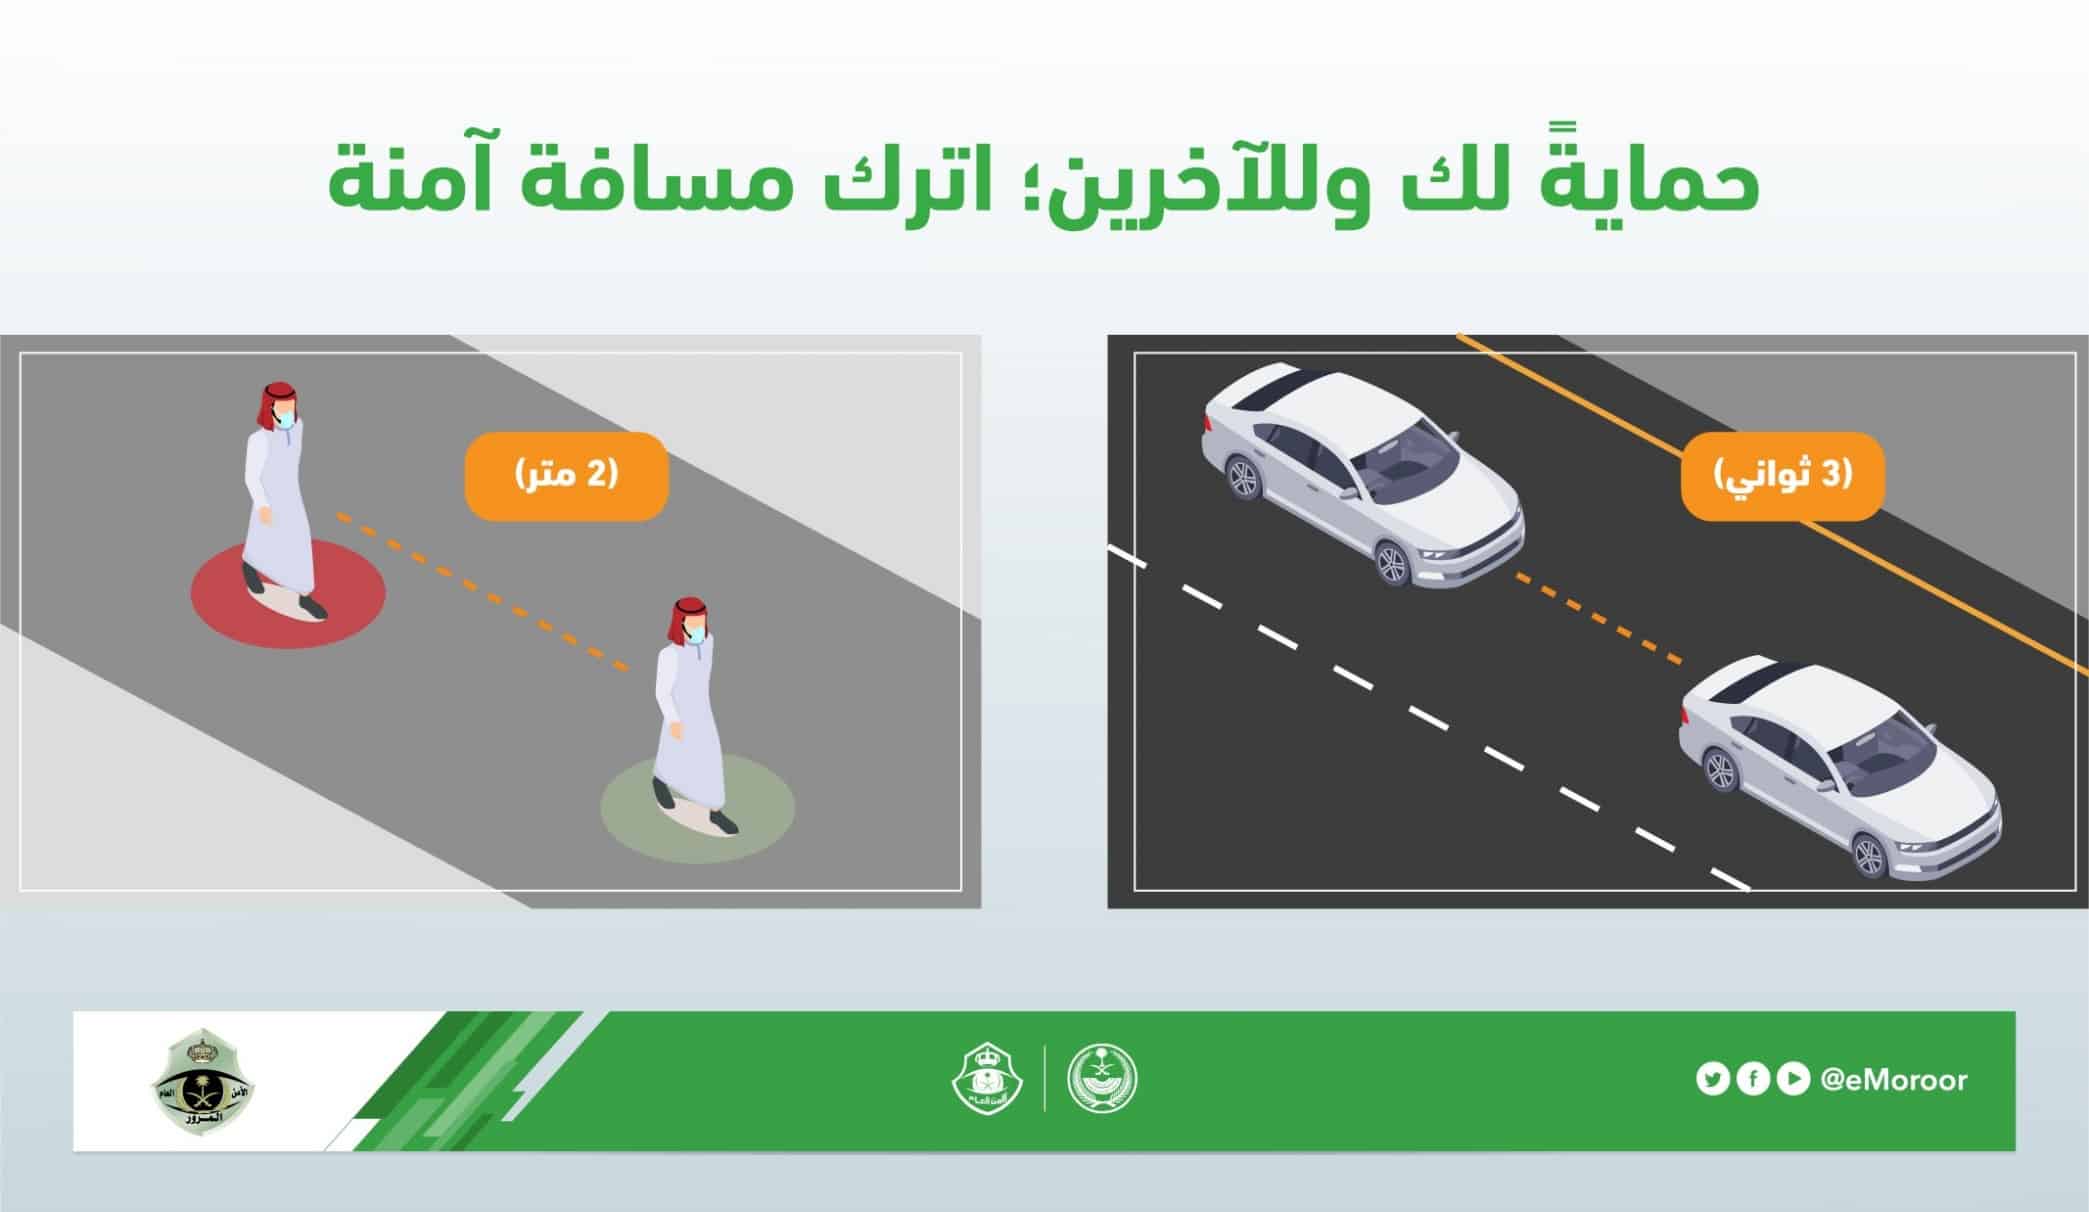 المرور يحدد المسافة الآمنة بين المركبات على الطريق